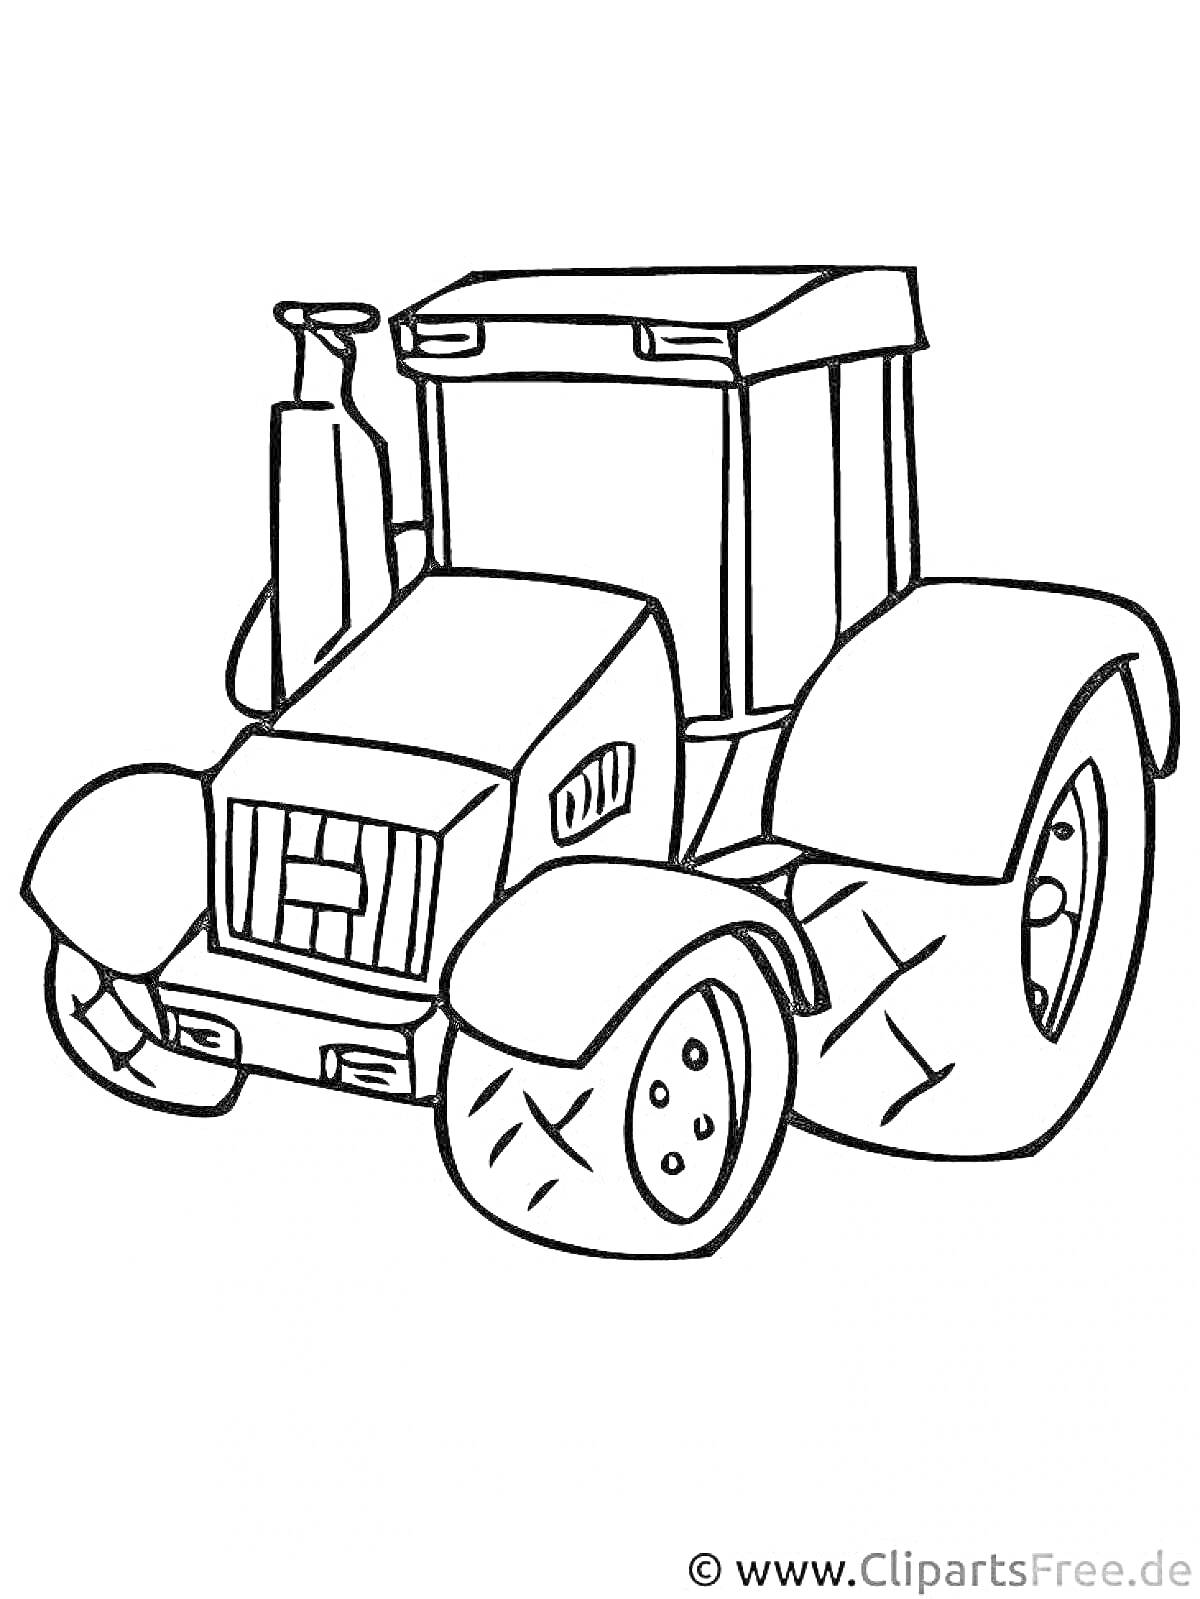 Раскраска Нарисованный трактор с большими колесами